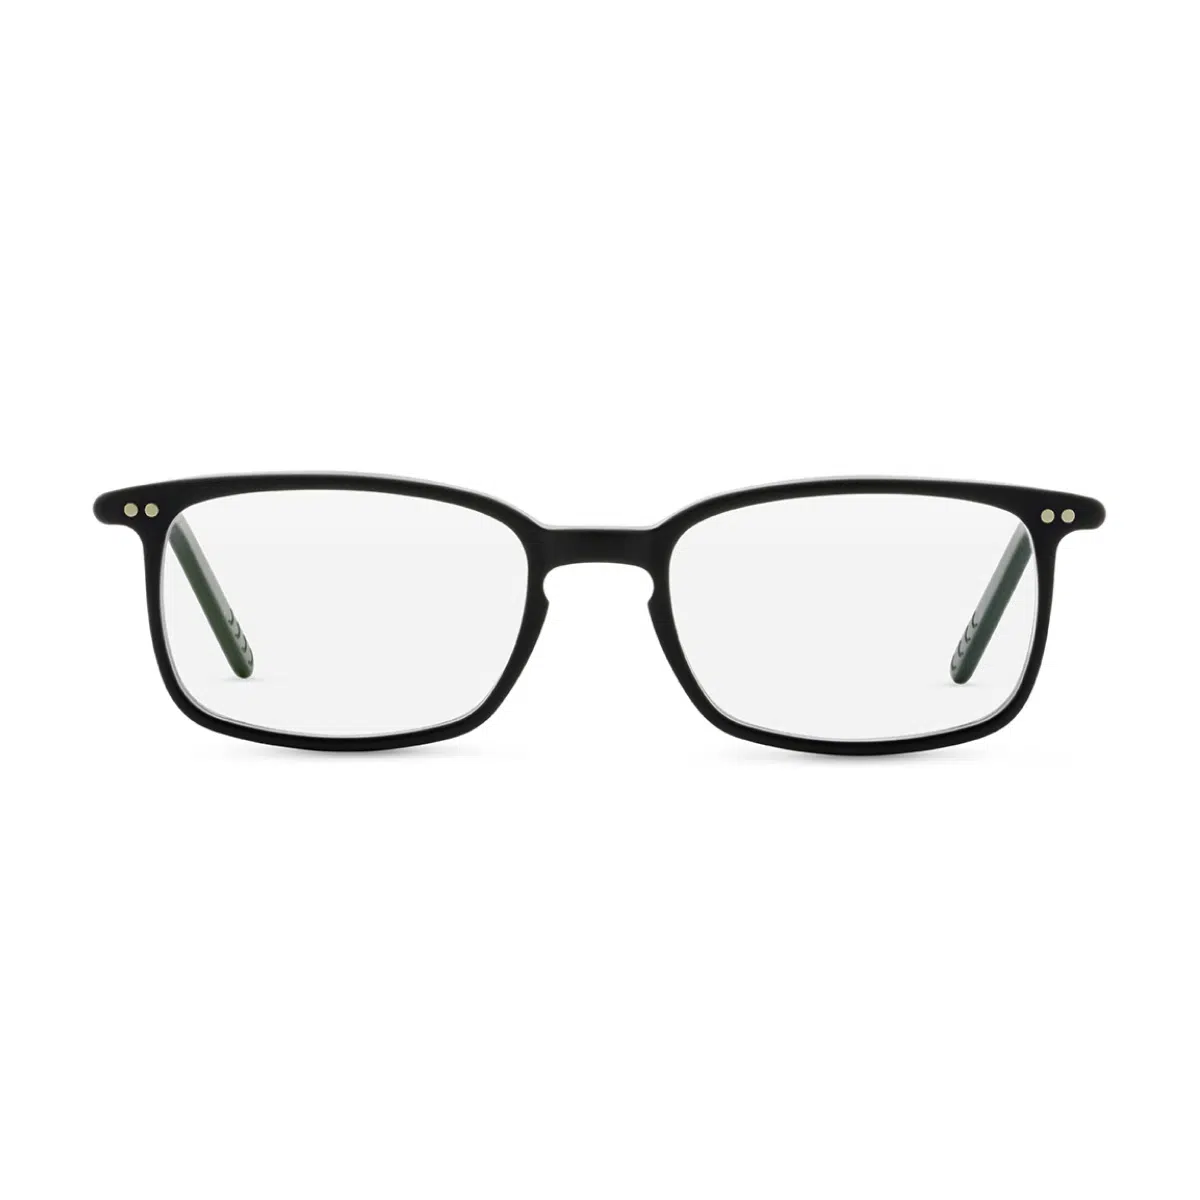 Eyeglasses Archives | Edward Beiner